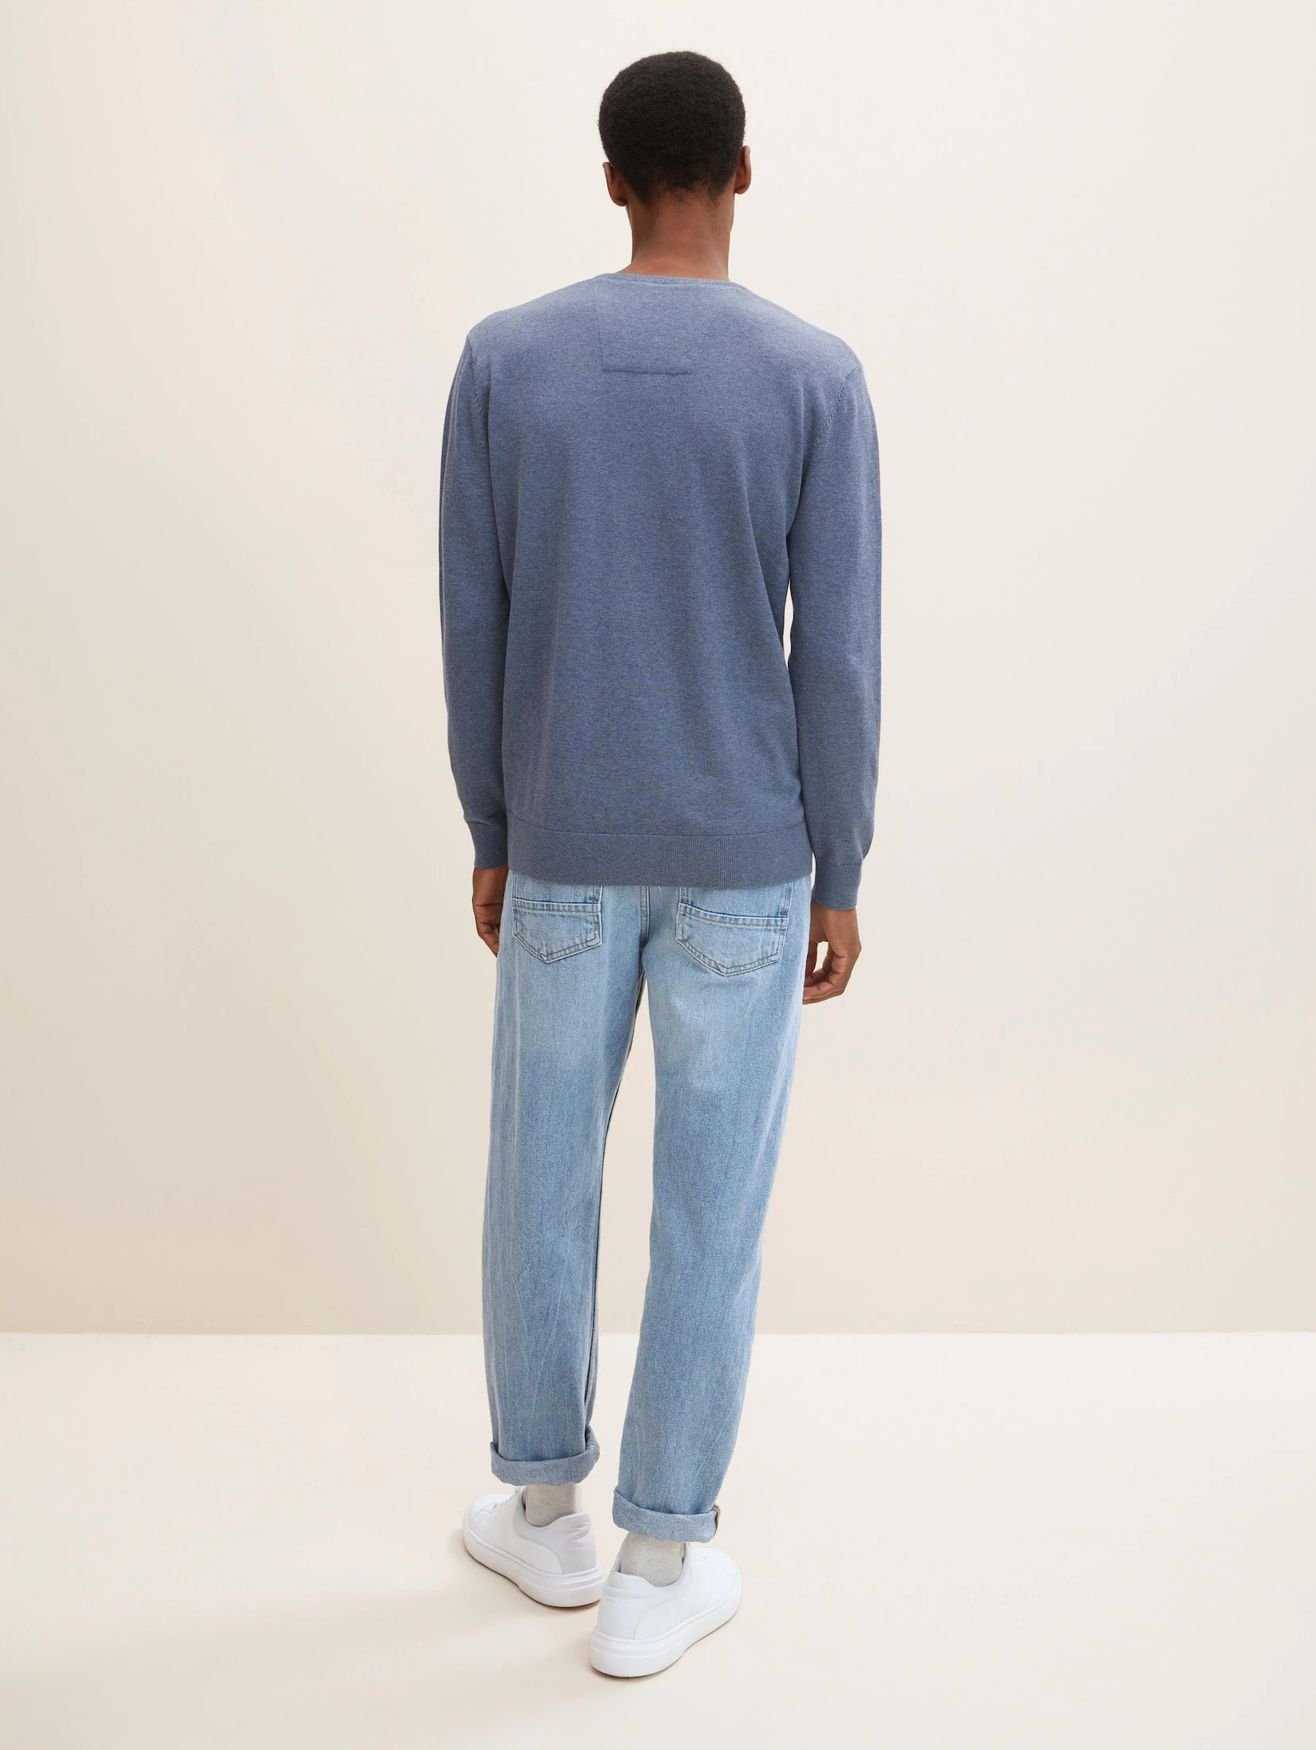 in Strickpullover Sweater Pullover Blau TAILOR TOM 4652 V-Ausschnitt Basic Dünner Feinstrick